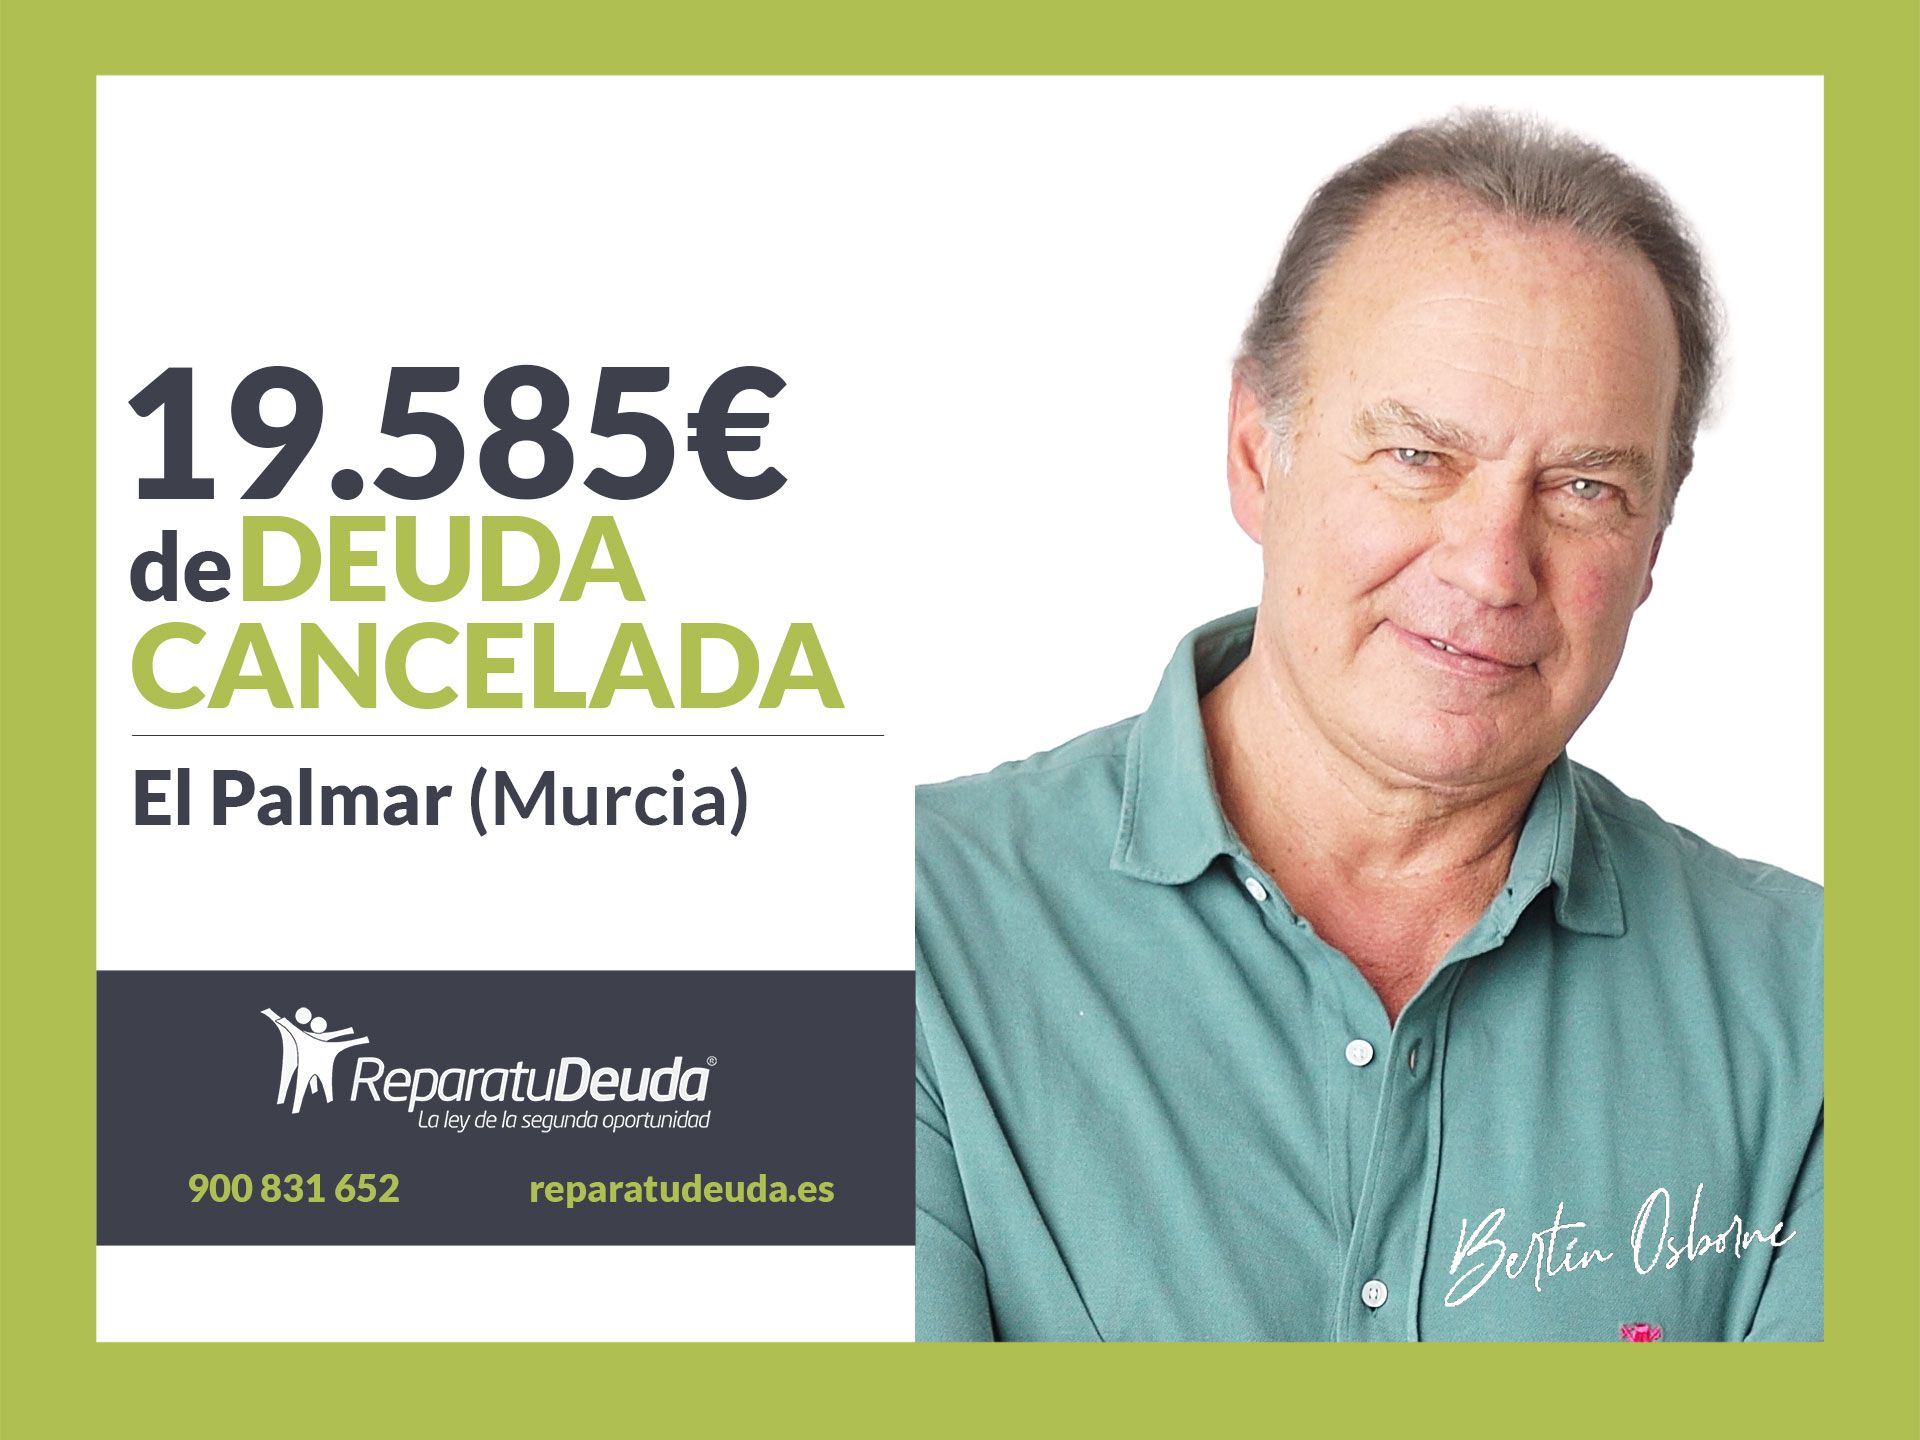 Repara tu Deuda Abogados cancela 19.585? en El Palmar (Murcia) gracias a la Ley de Segunda Oportunidad